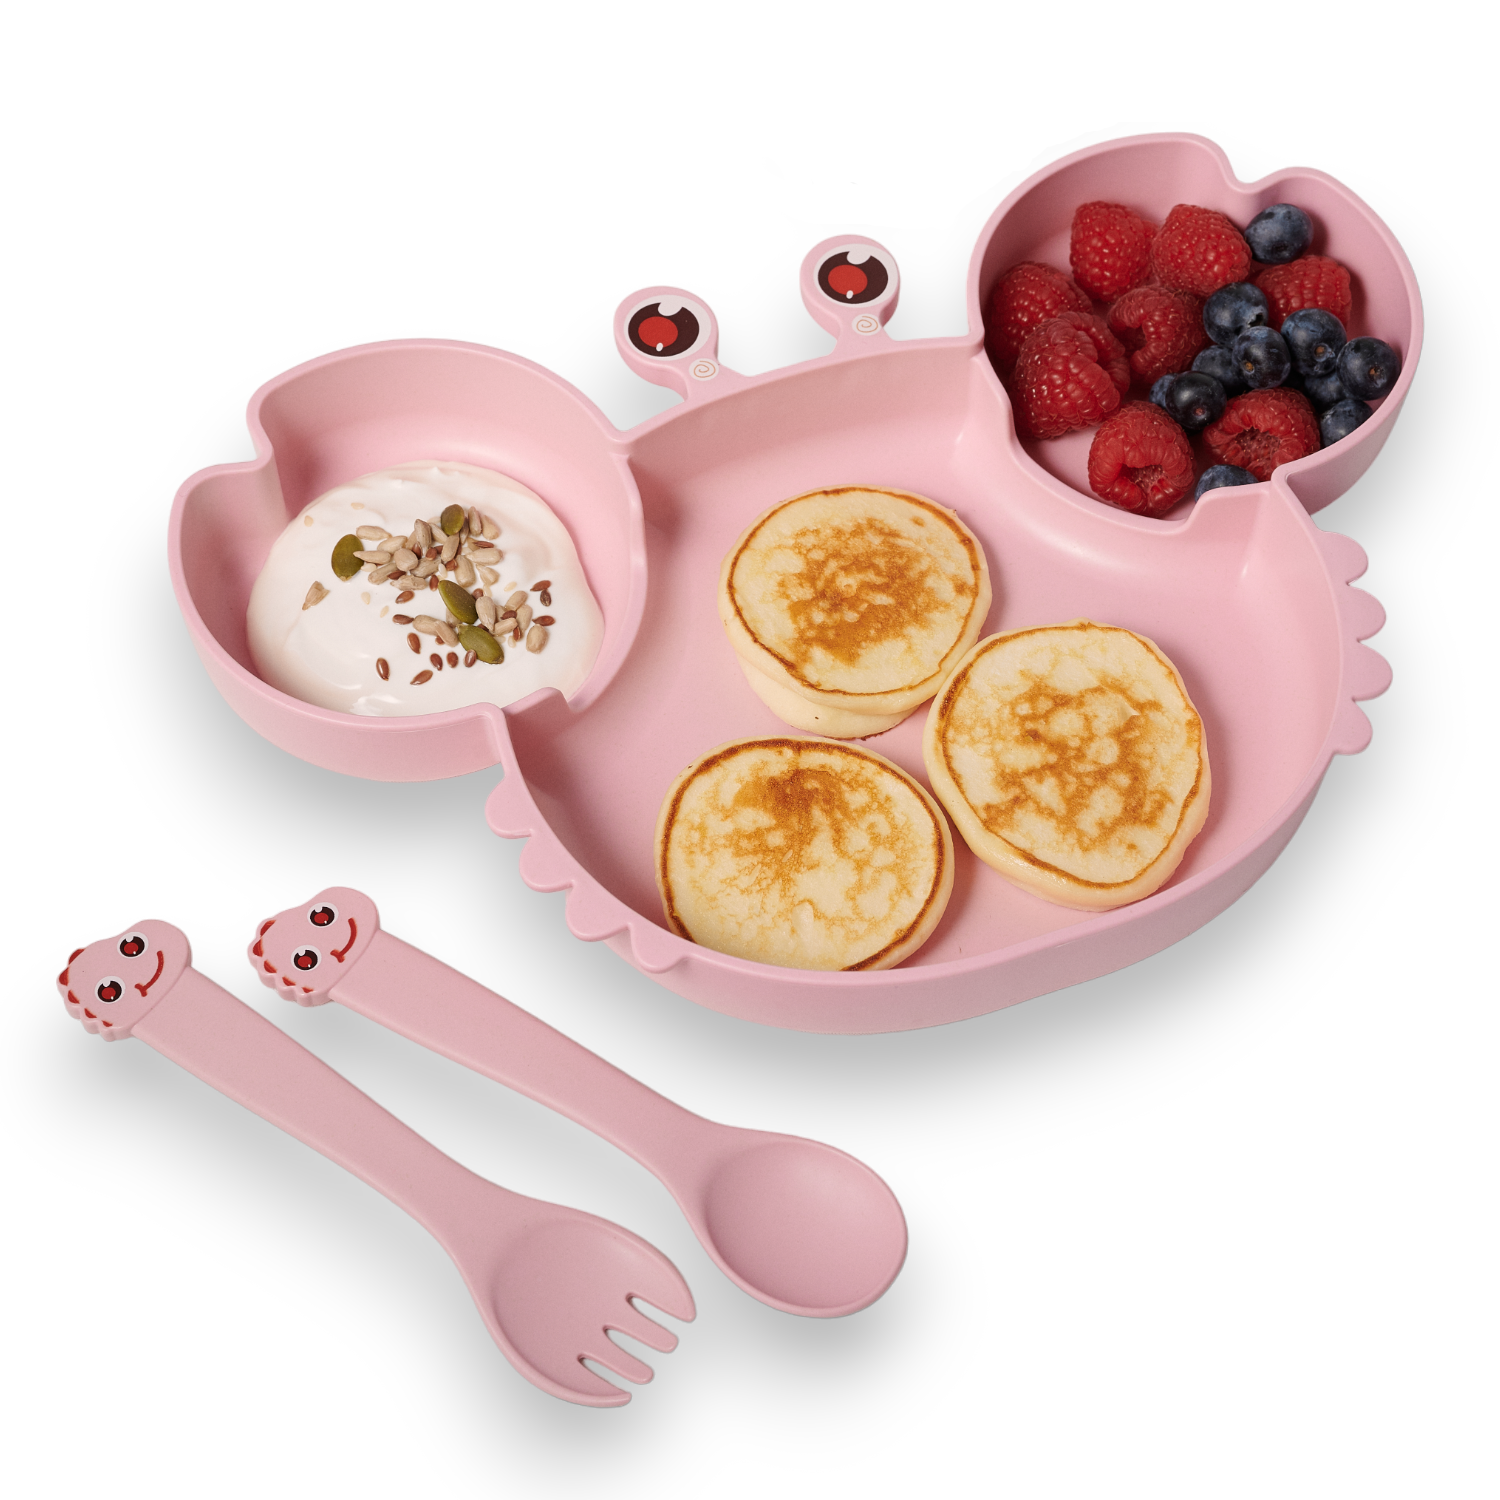 Детская посуда для кормления Добрый Филин Крабик тарелка, ложка, вилка, палочки, розовая